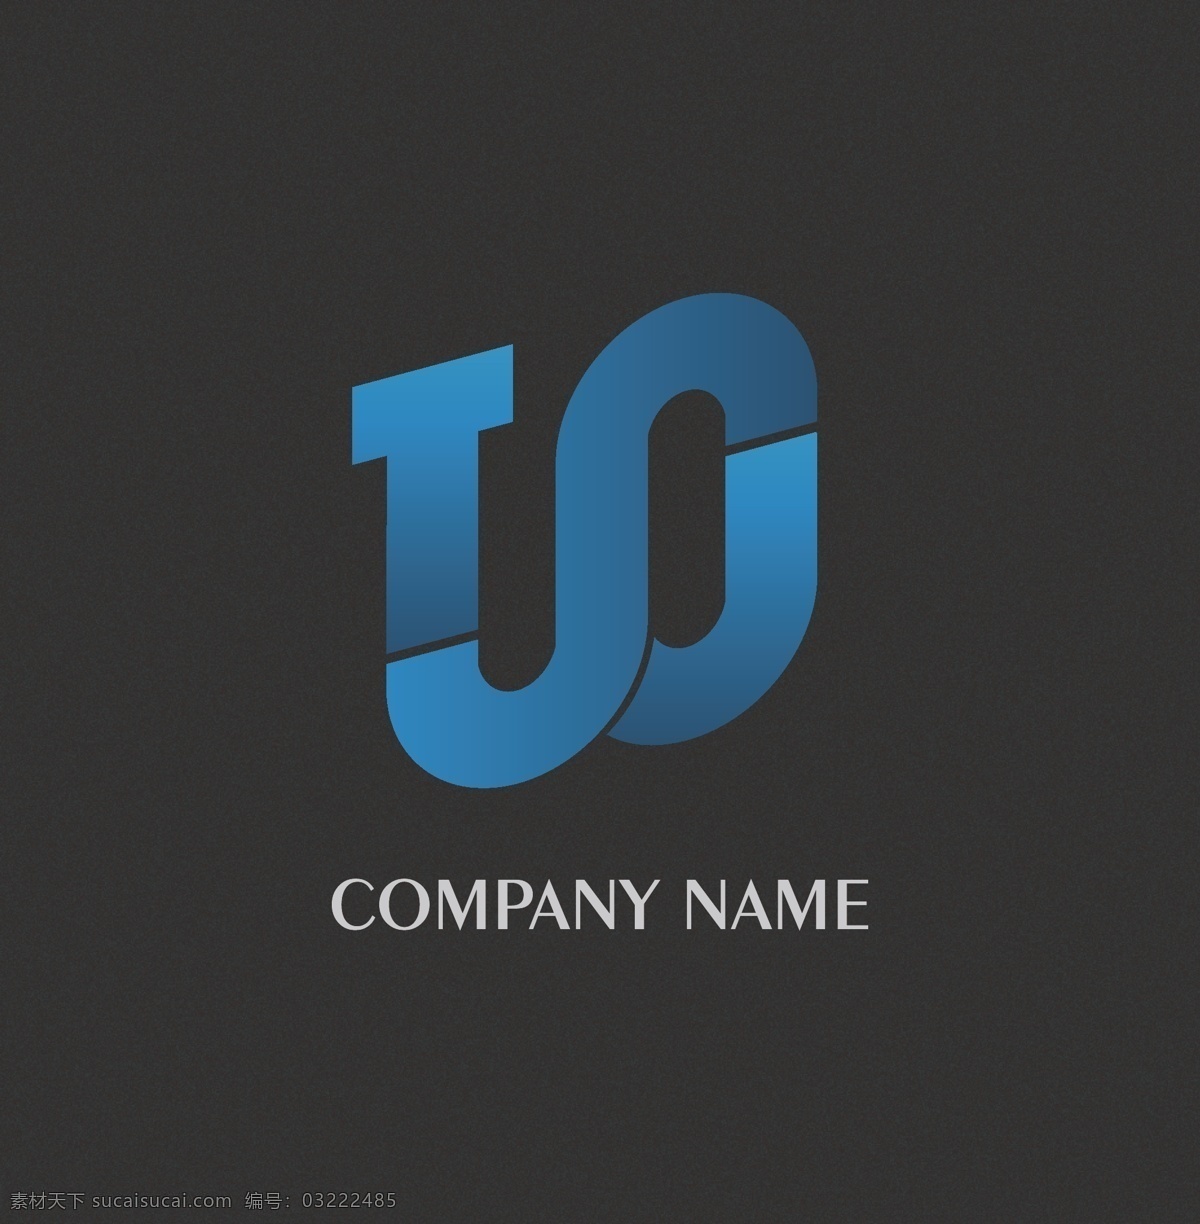 原创 s 字母 logo logo图形 logo模板 t j 网络 科技 蓝色 渐变 ai格式 潮流 创意 时尚 数据 企业 标志 标识标志图标 矢量 标志图标